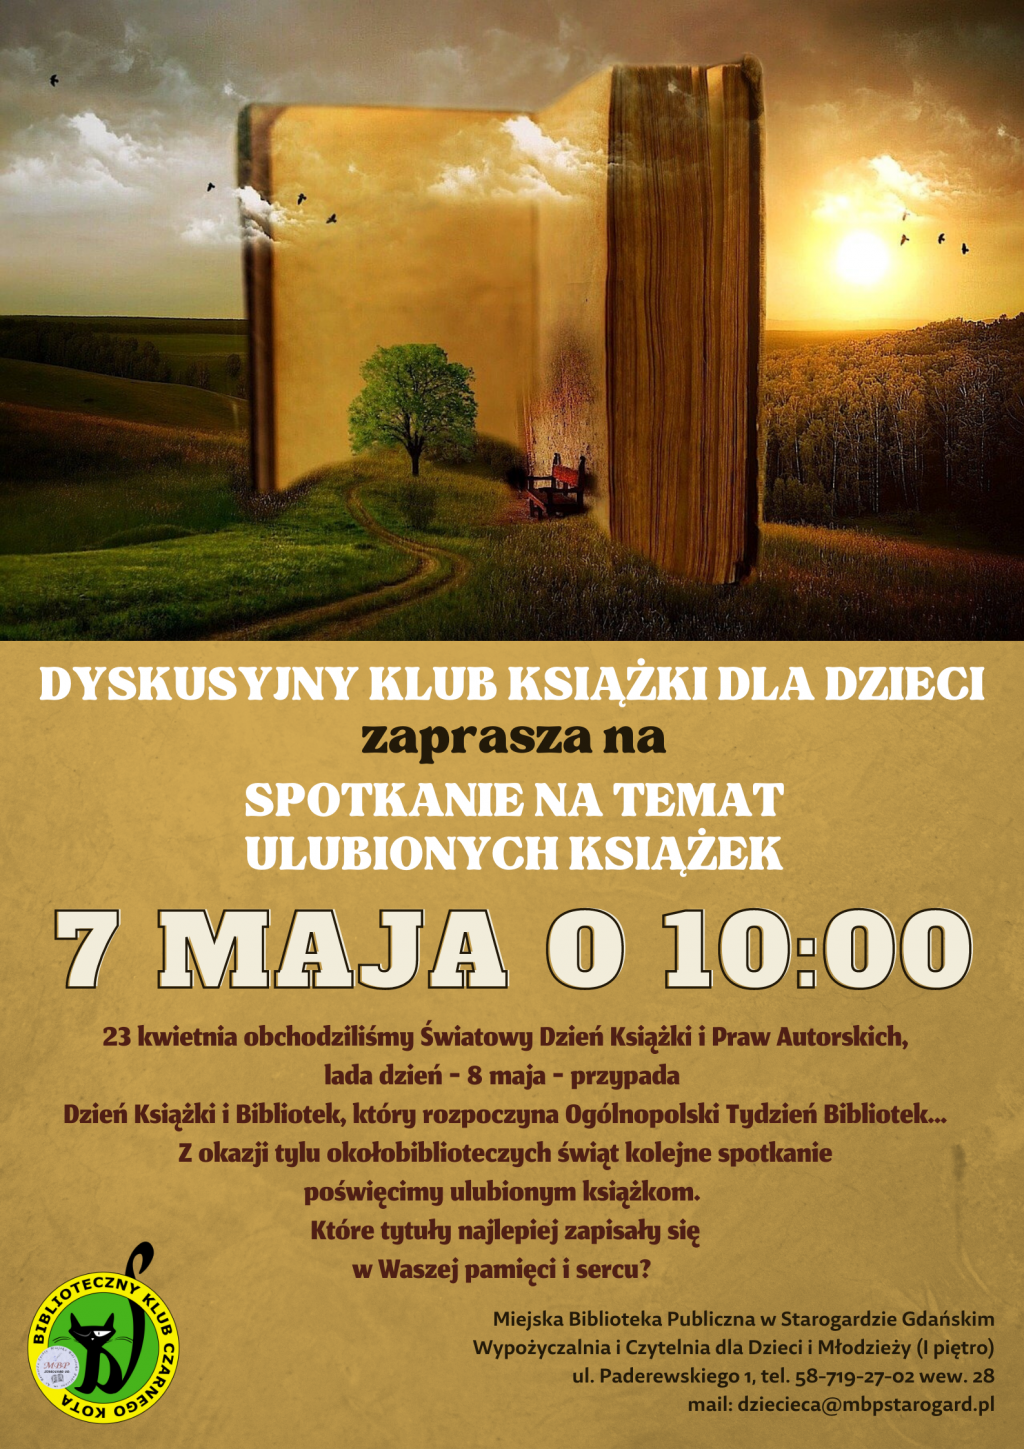 Dyskusyjny Klub Książki dla Dzieci zaprasza na spotkanie poświęcone ulubionym książkom 7 maja o 10:00. 23 kwietnia obchodziliśmy Światowy Dzień Książki i Praw Autorskich, lada dzień - 8 maja - przypada Dzień Książki i Bibliotek, który rozpoczyna Ogólnopolski Tydzień Bibliotek... Z okazji tylu okołobiblioteczych świąt kolejne spotkanie poświęcimy ulubionym książkom. Które tytuły najlepiej zapisały się w Waszej pamięci i sercu? Miejska Biblioteka Publiczna w Starogardzie Gdańskim Wypożyczalnia i Czytelnia dla Dzieci i Młodzieży (I piętro) ul. Paderewskiego 1 tel. 58-719-27-02 wew. 28 mail: dziecieca@mbpstarogard.pl Baśniowa grafika z książką i logo biblioteki.